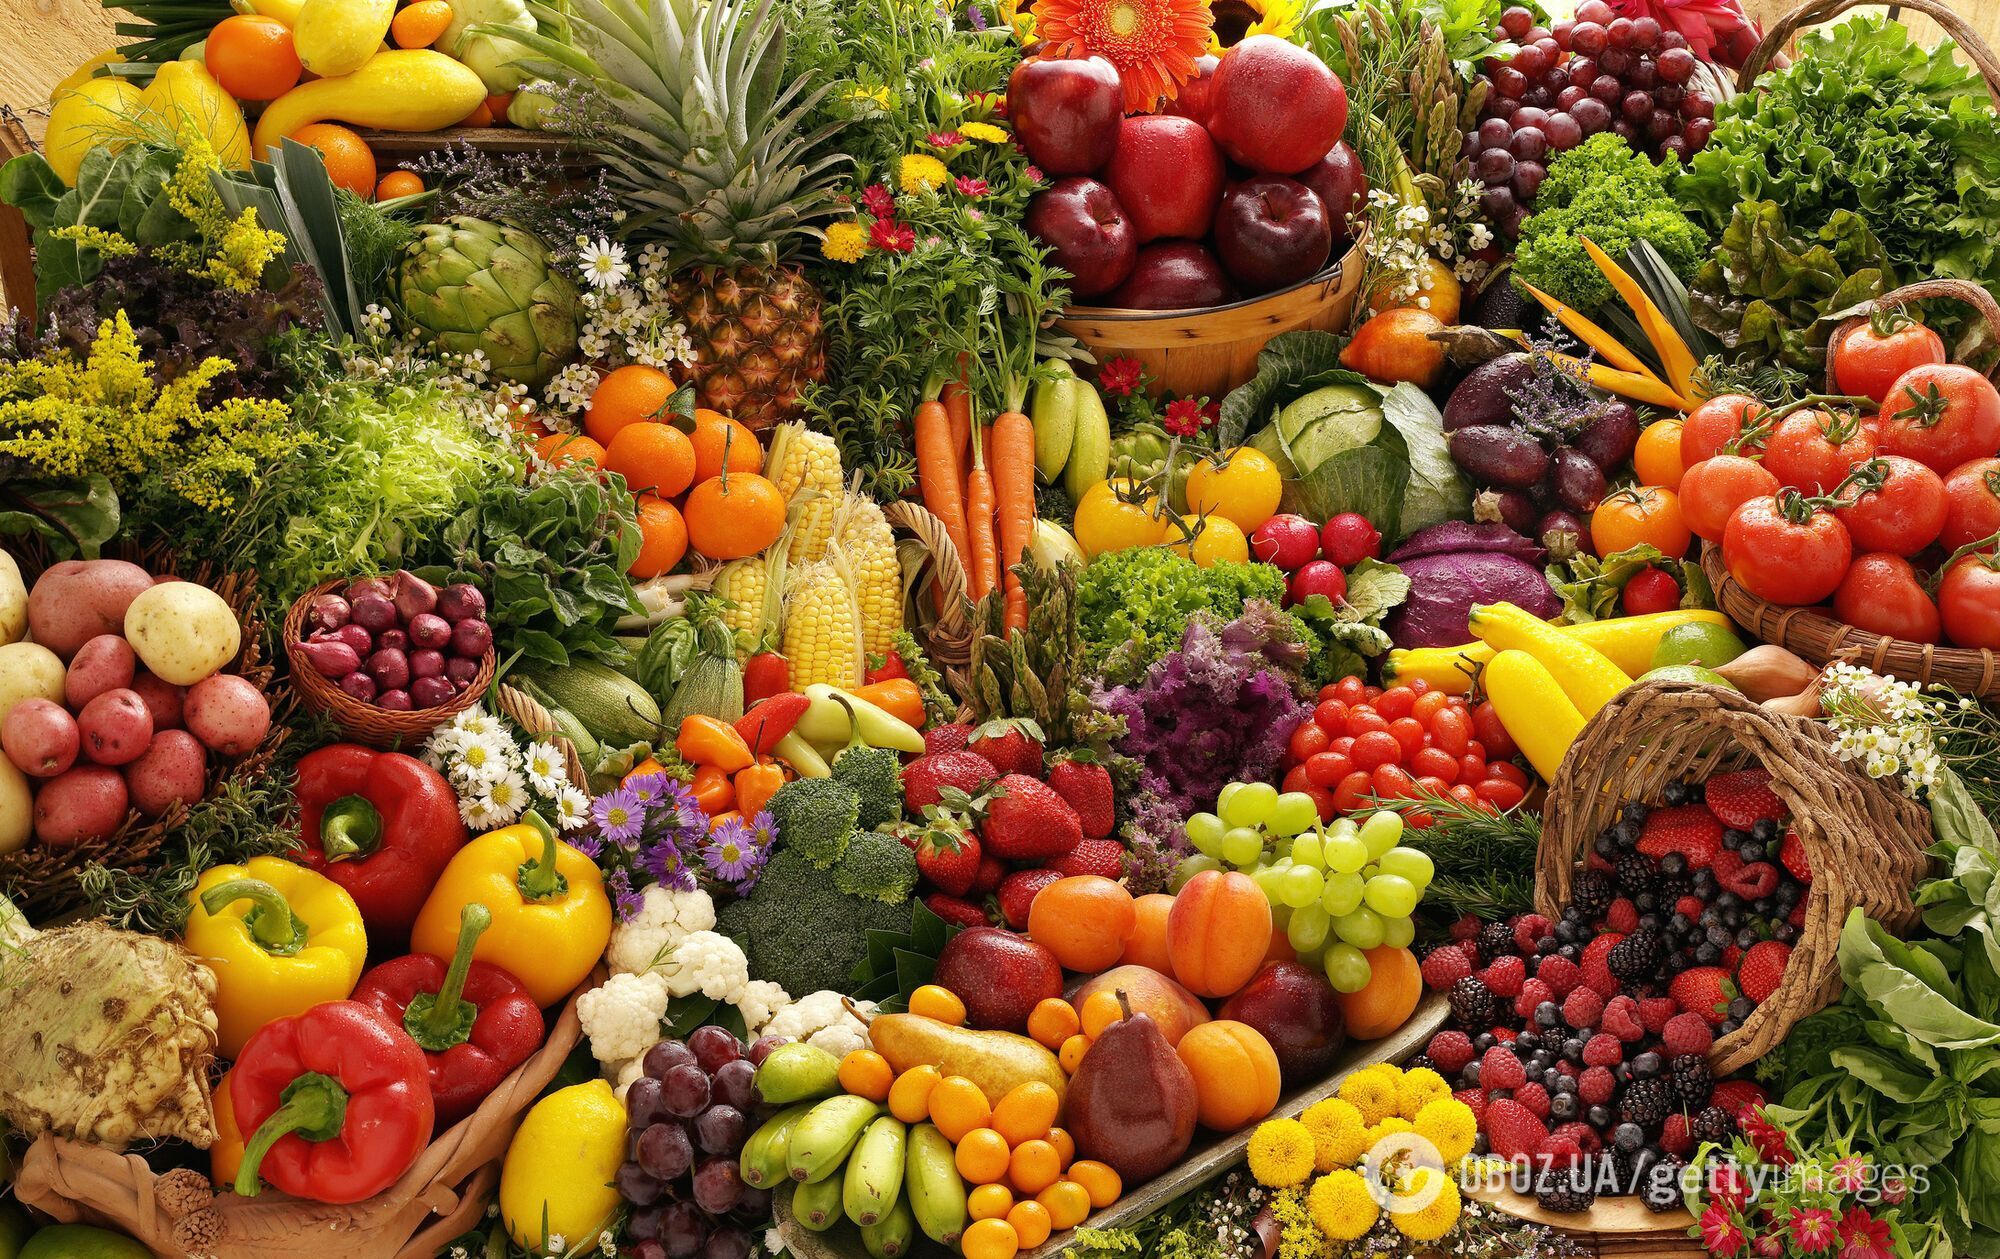 Летних фруктов и овощей не хватает для обеспечения организма всем необходимым.